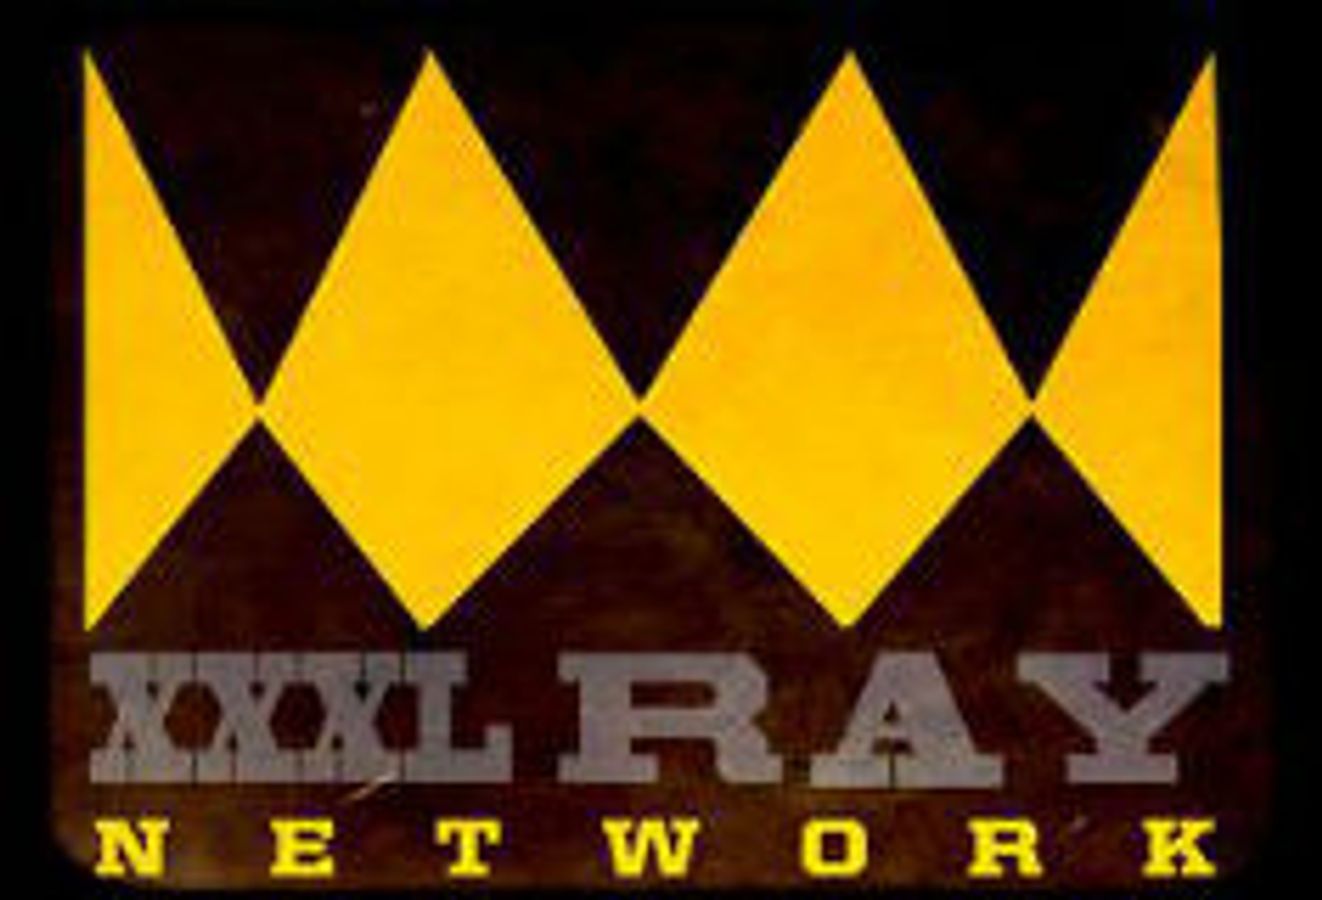 XXXL Rey Network